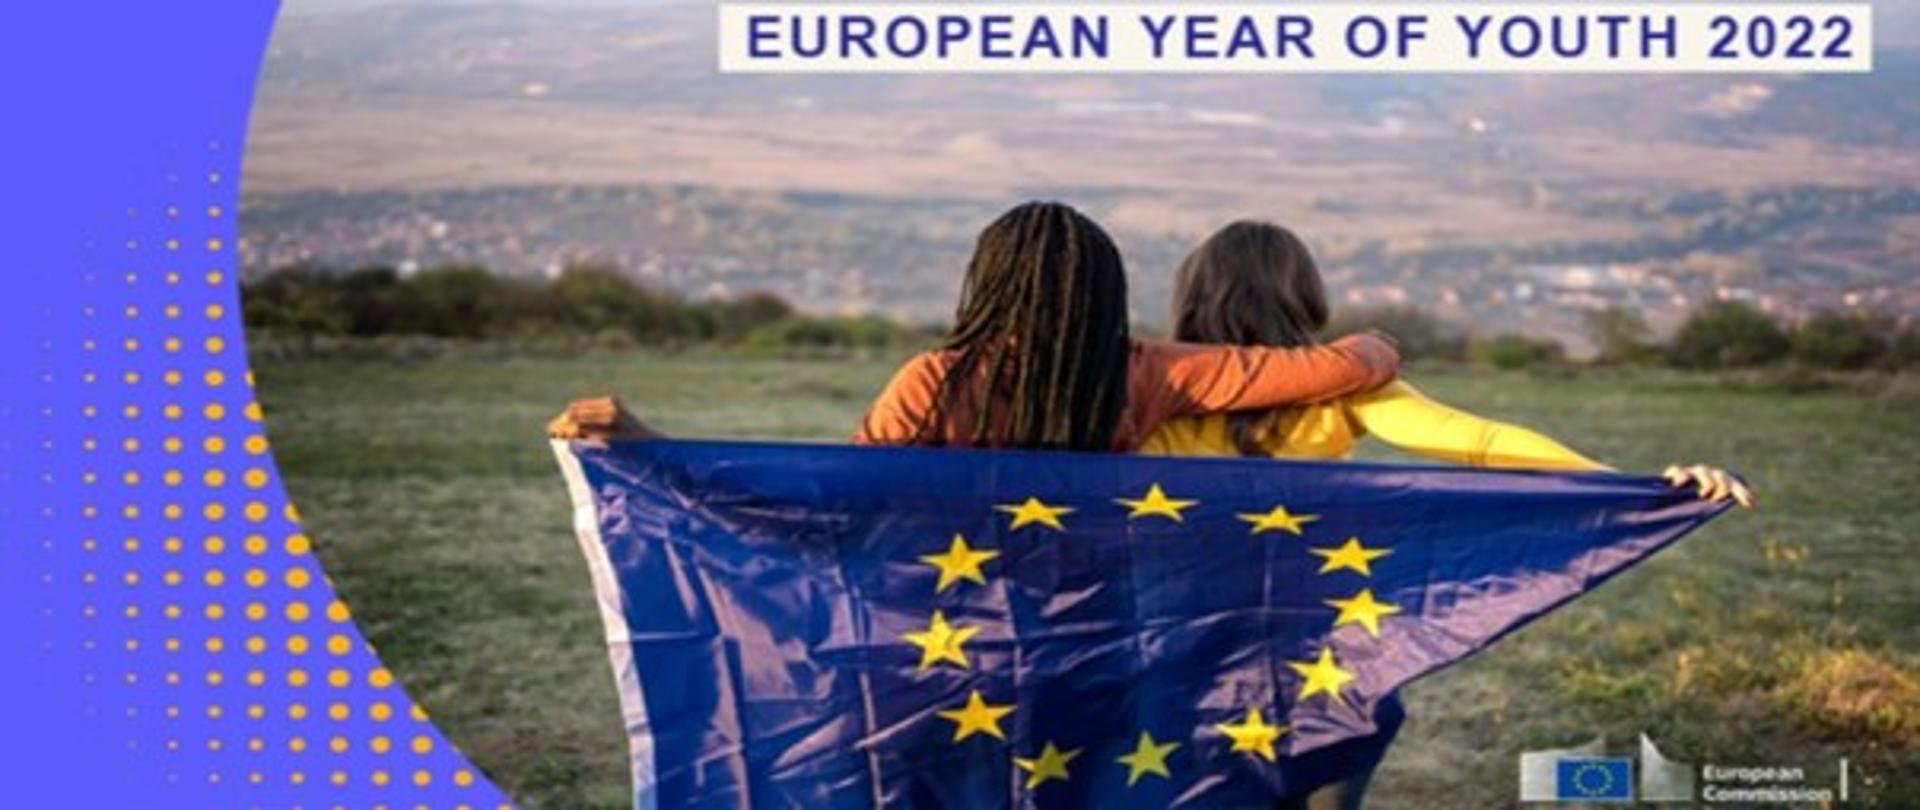 Kobiety trzymające flagę Unii Europejskiej na wzgórzu. Na górze napis European Year of youth 2022